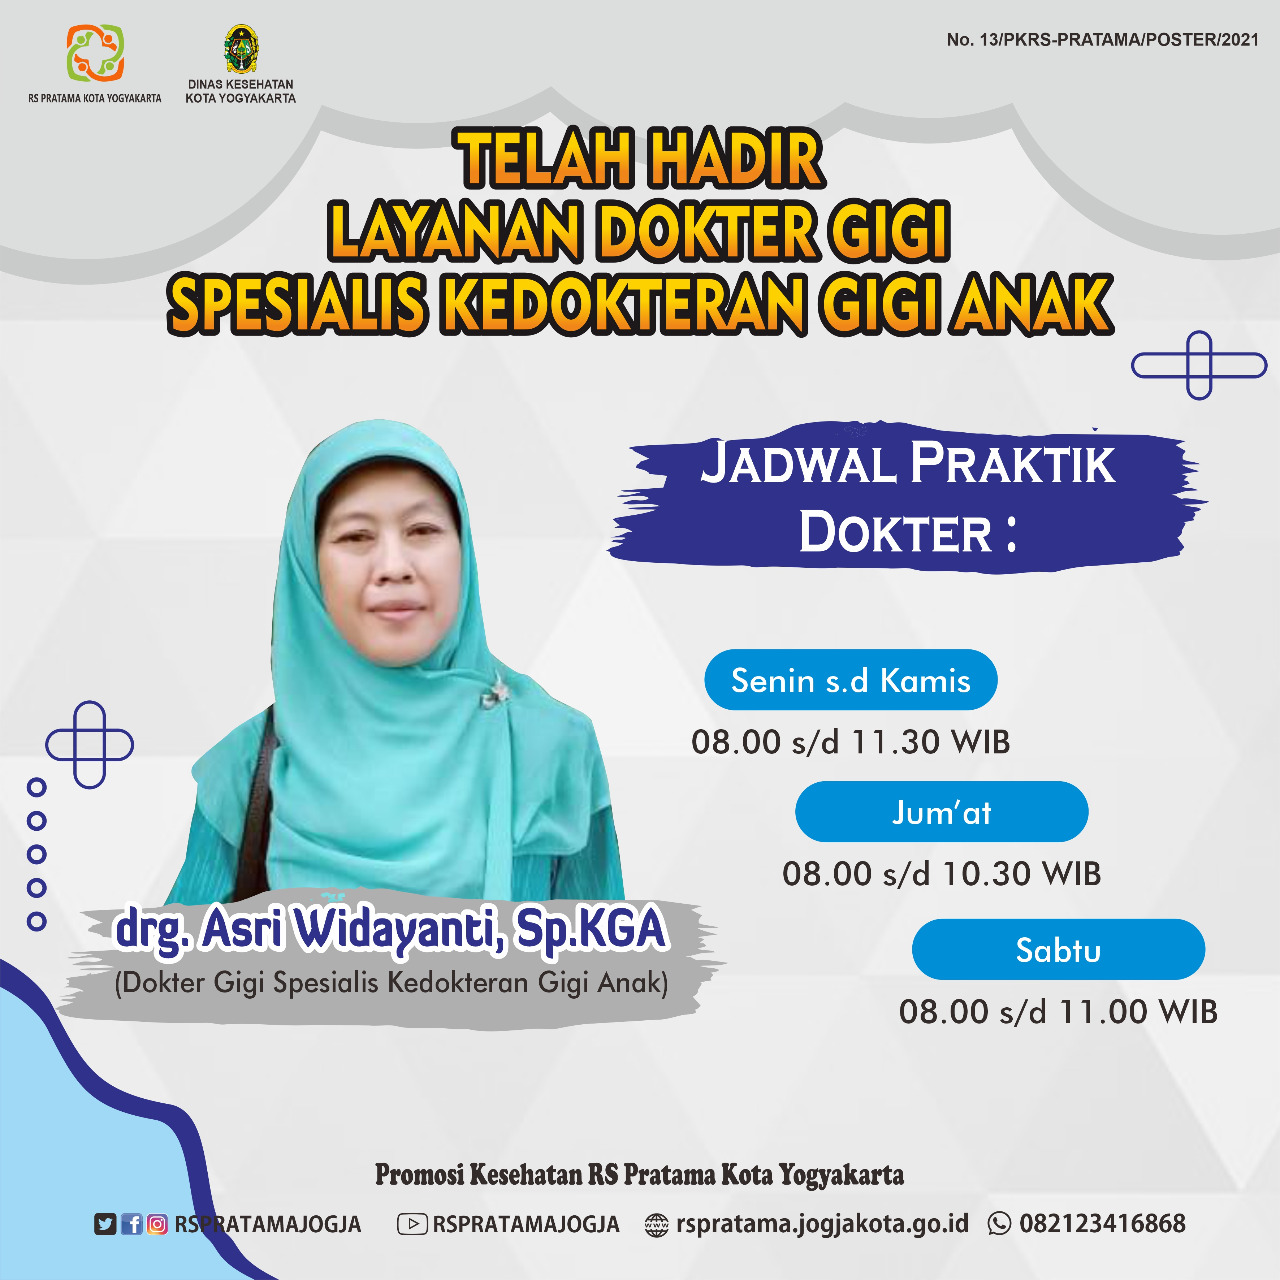 Telah Hadir Layanan Dokter Gigi Spesialis Kedokteran Gigi Anak di RS Pratama Kota Yogyakarta.